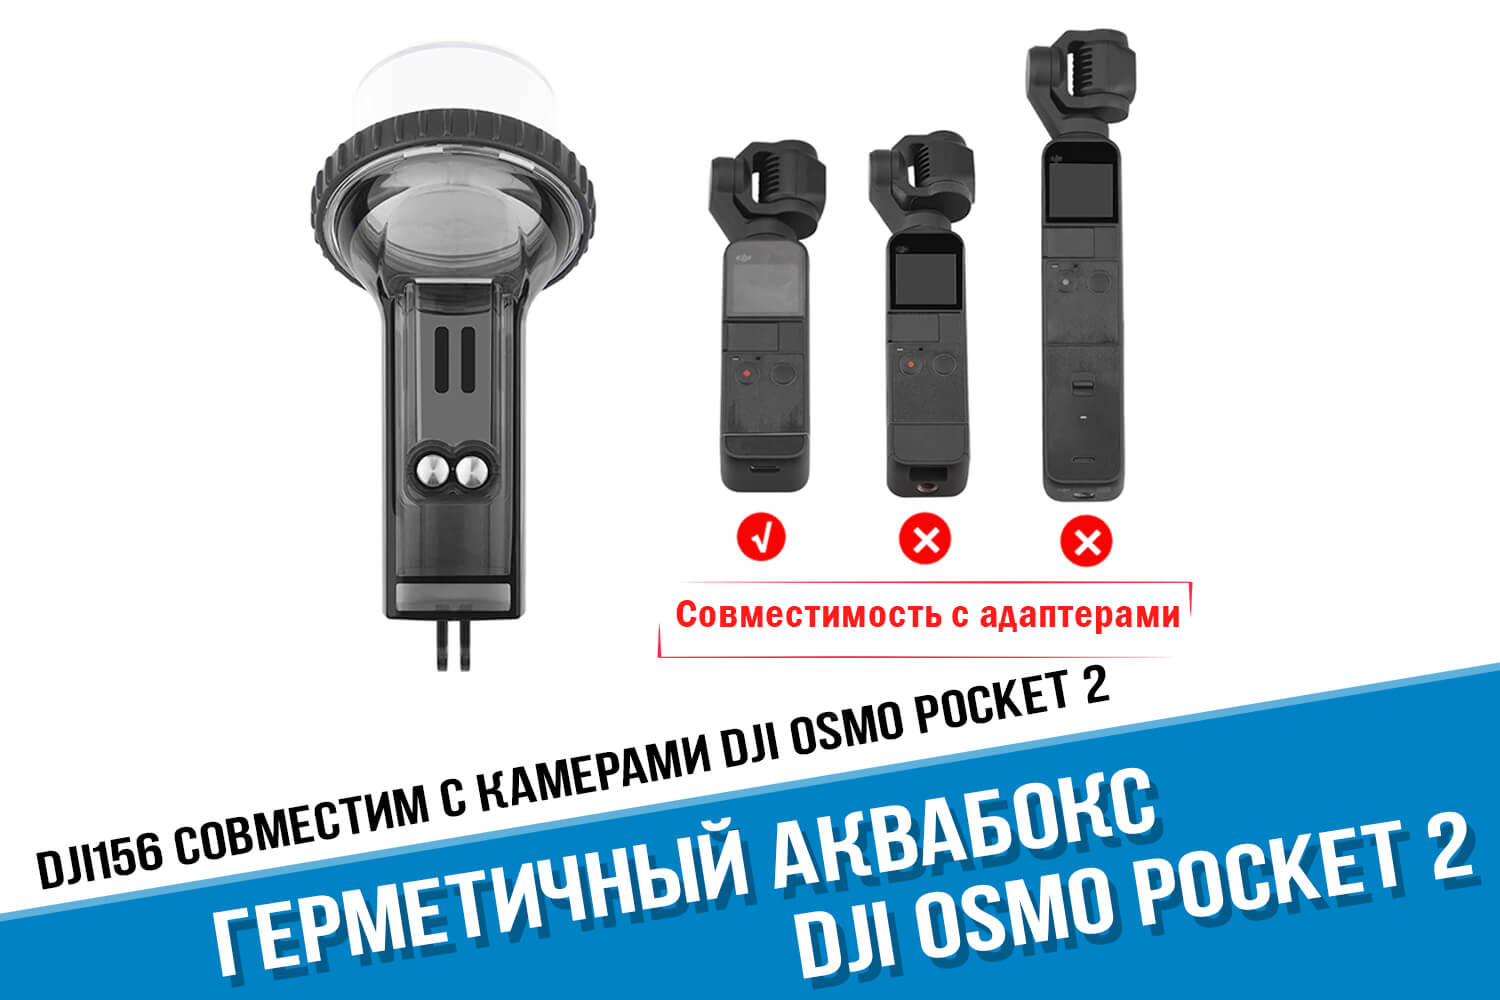 Совместимость с адаптерами аквабокса для камеры DJI Osmo Pocket 2